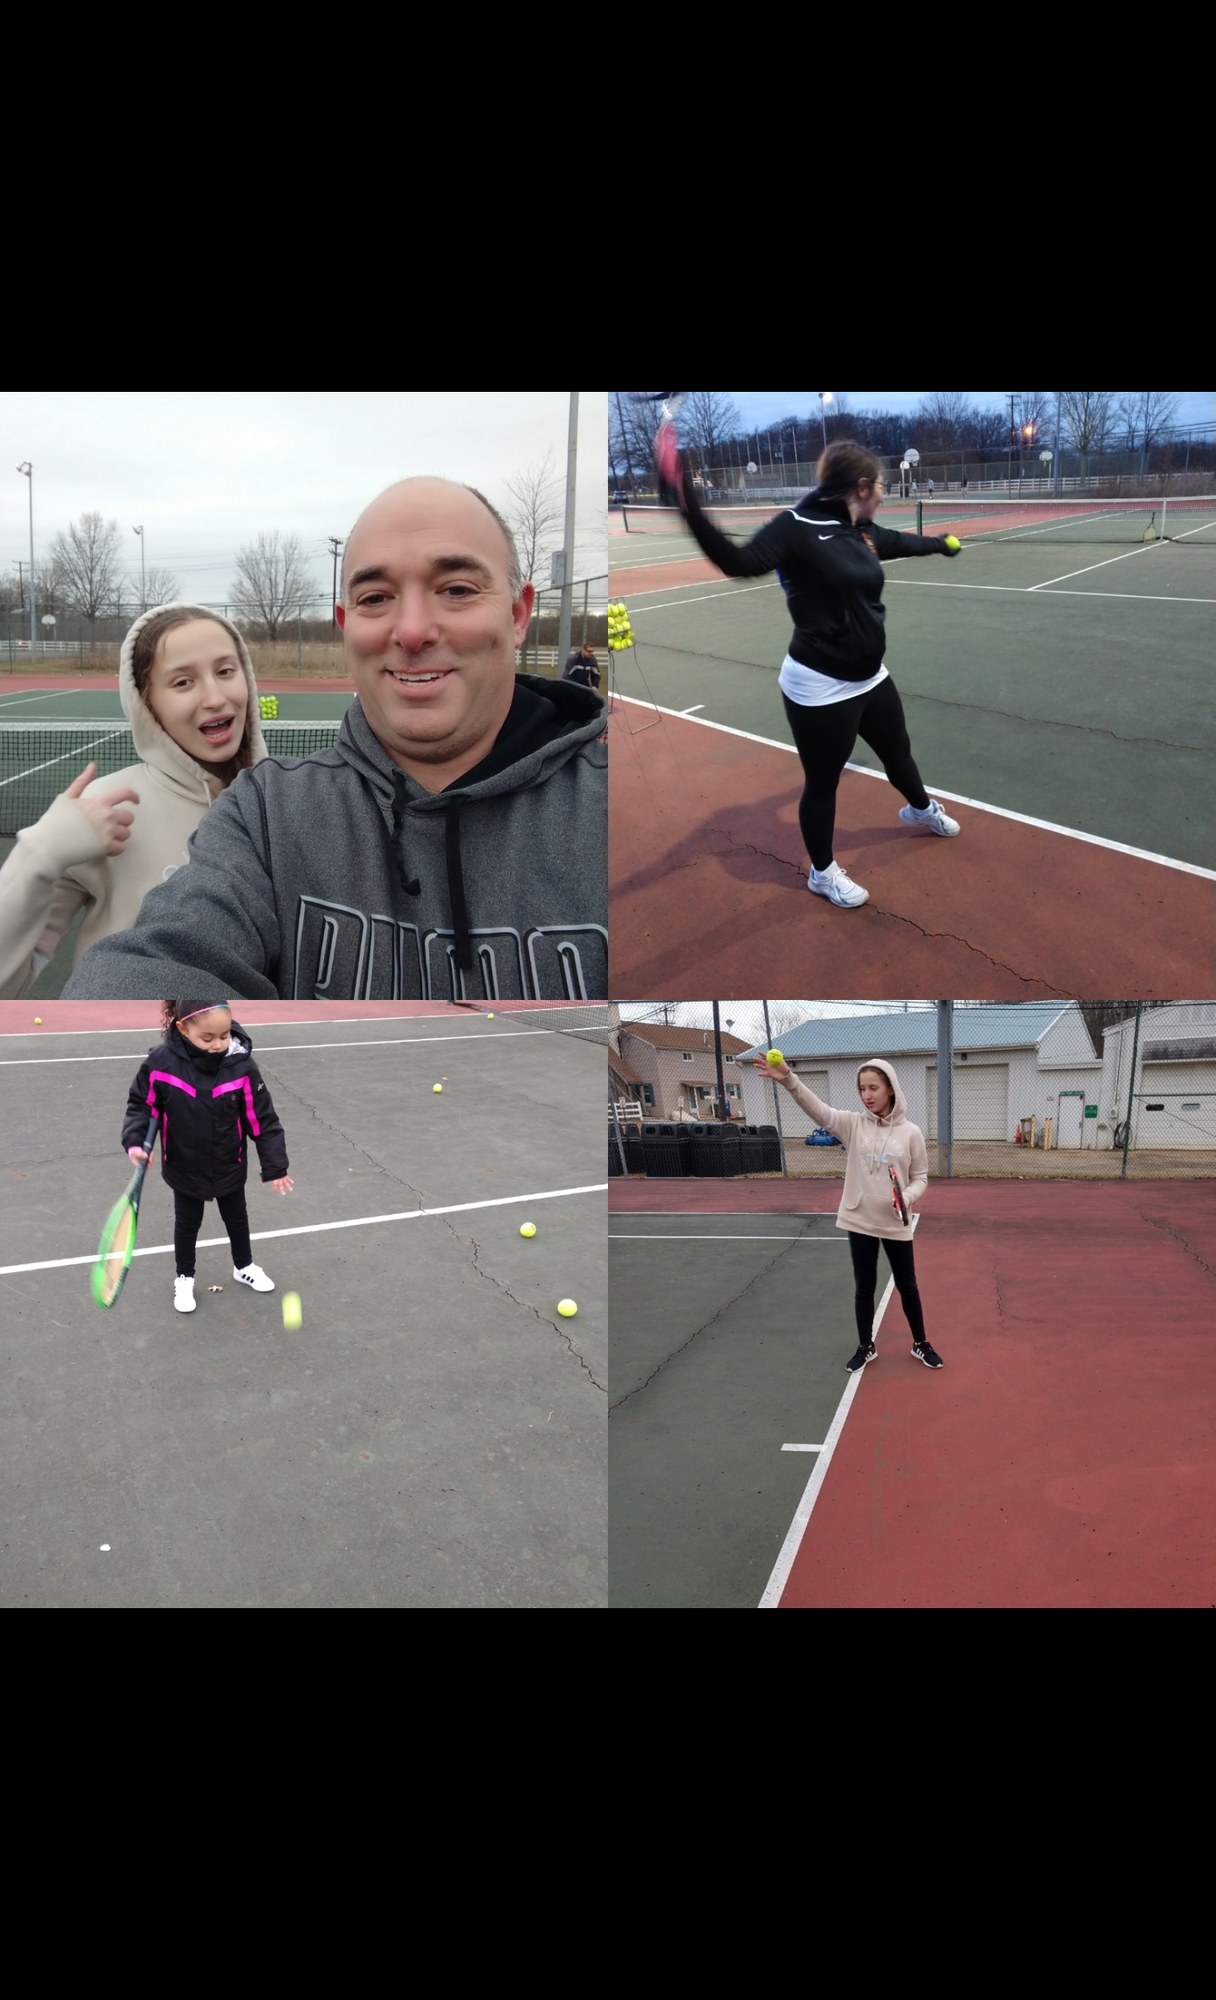 Jason F. teaches tennis lessons in Marlton, NJ